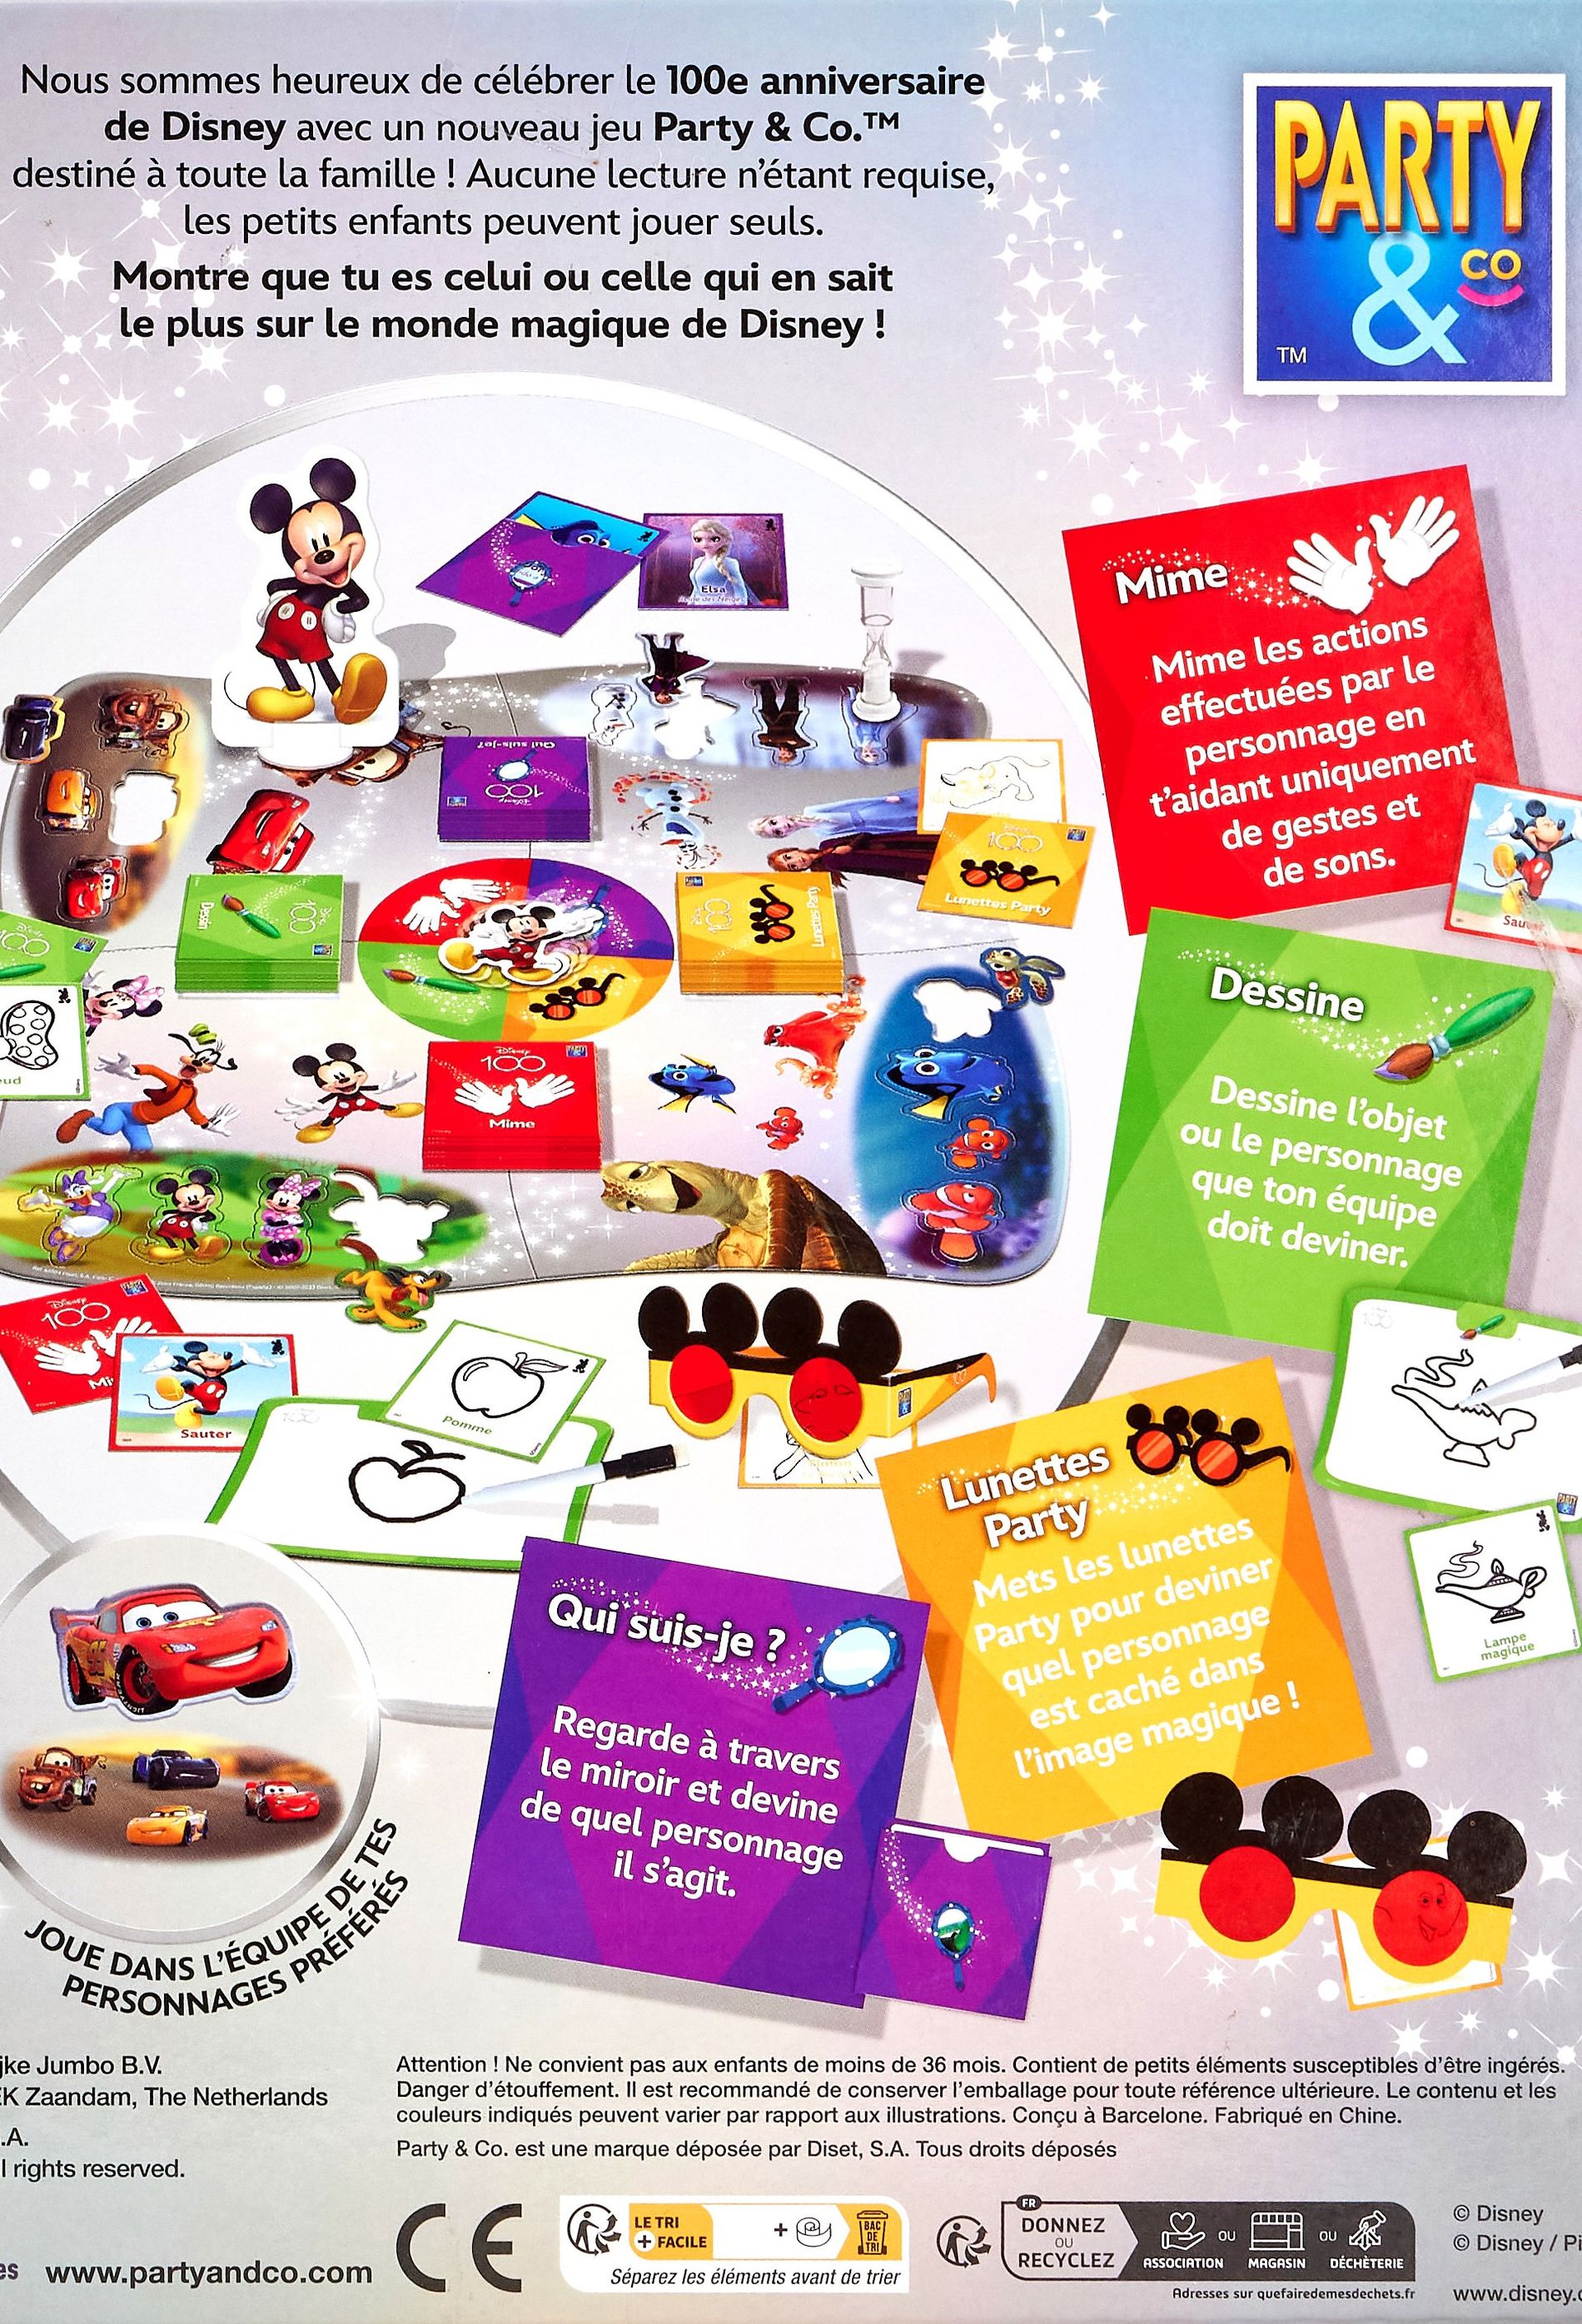 Party & Co Disney 100 ans - Un jeu Dujardin - Boutique BCD JEUX